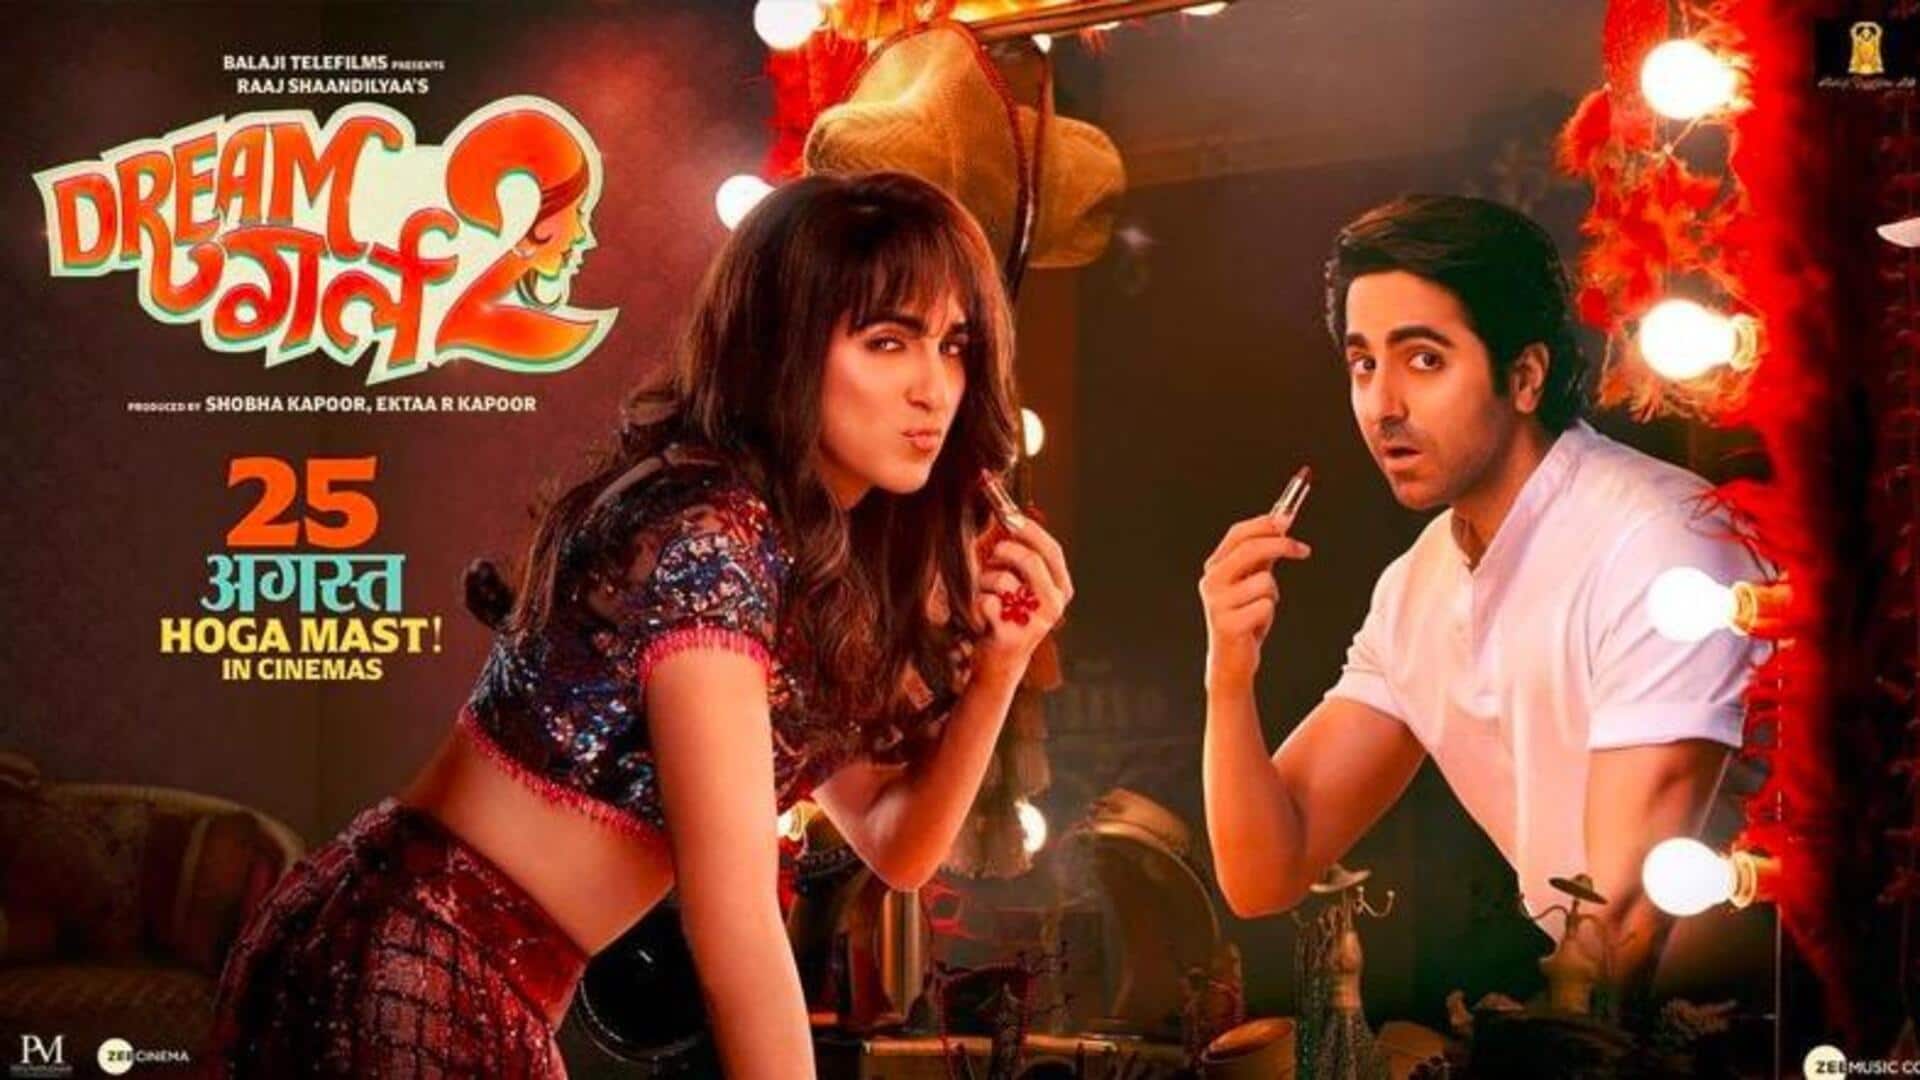 फिल्म 'ड्रीम गर्ल 2' का टीजर जारी, 'पूजा' बन दर्शकों के बीच छाए आयुष्मान खुराना 